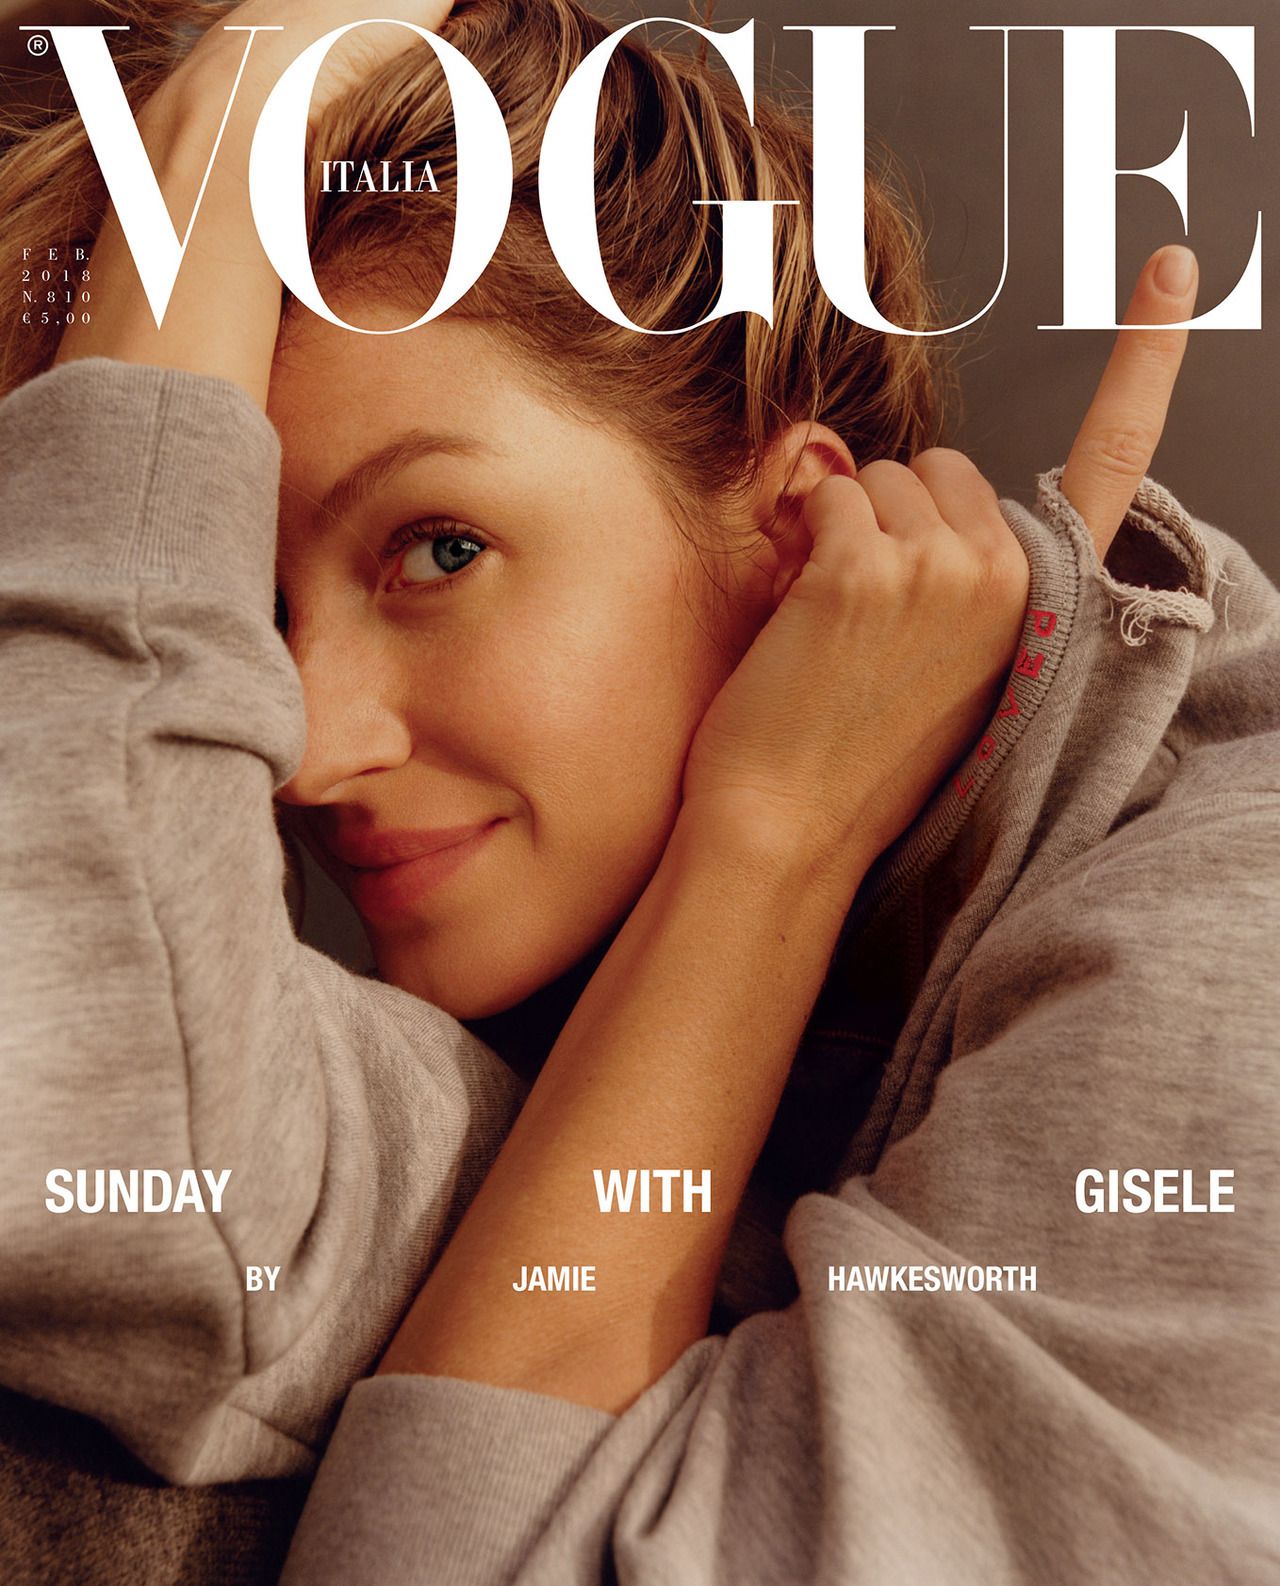 Cover Vogue Italia February 2018 | Jamie Hawkesworth | Gucci | Vogue Italia | Vittoria Cerciello | Numerique Retouch Photo Retouching Studio